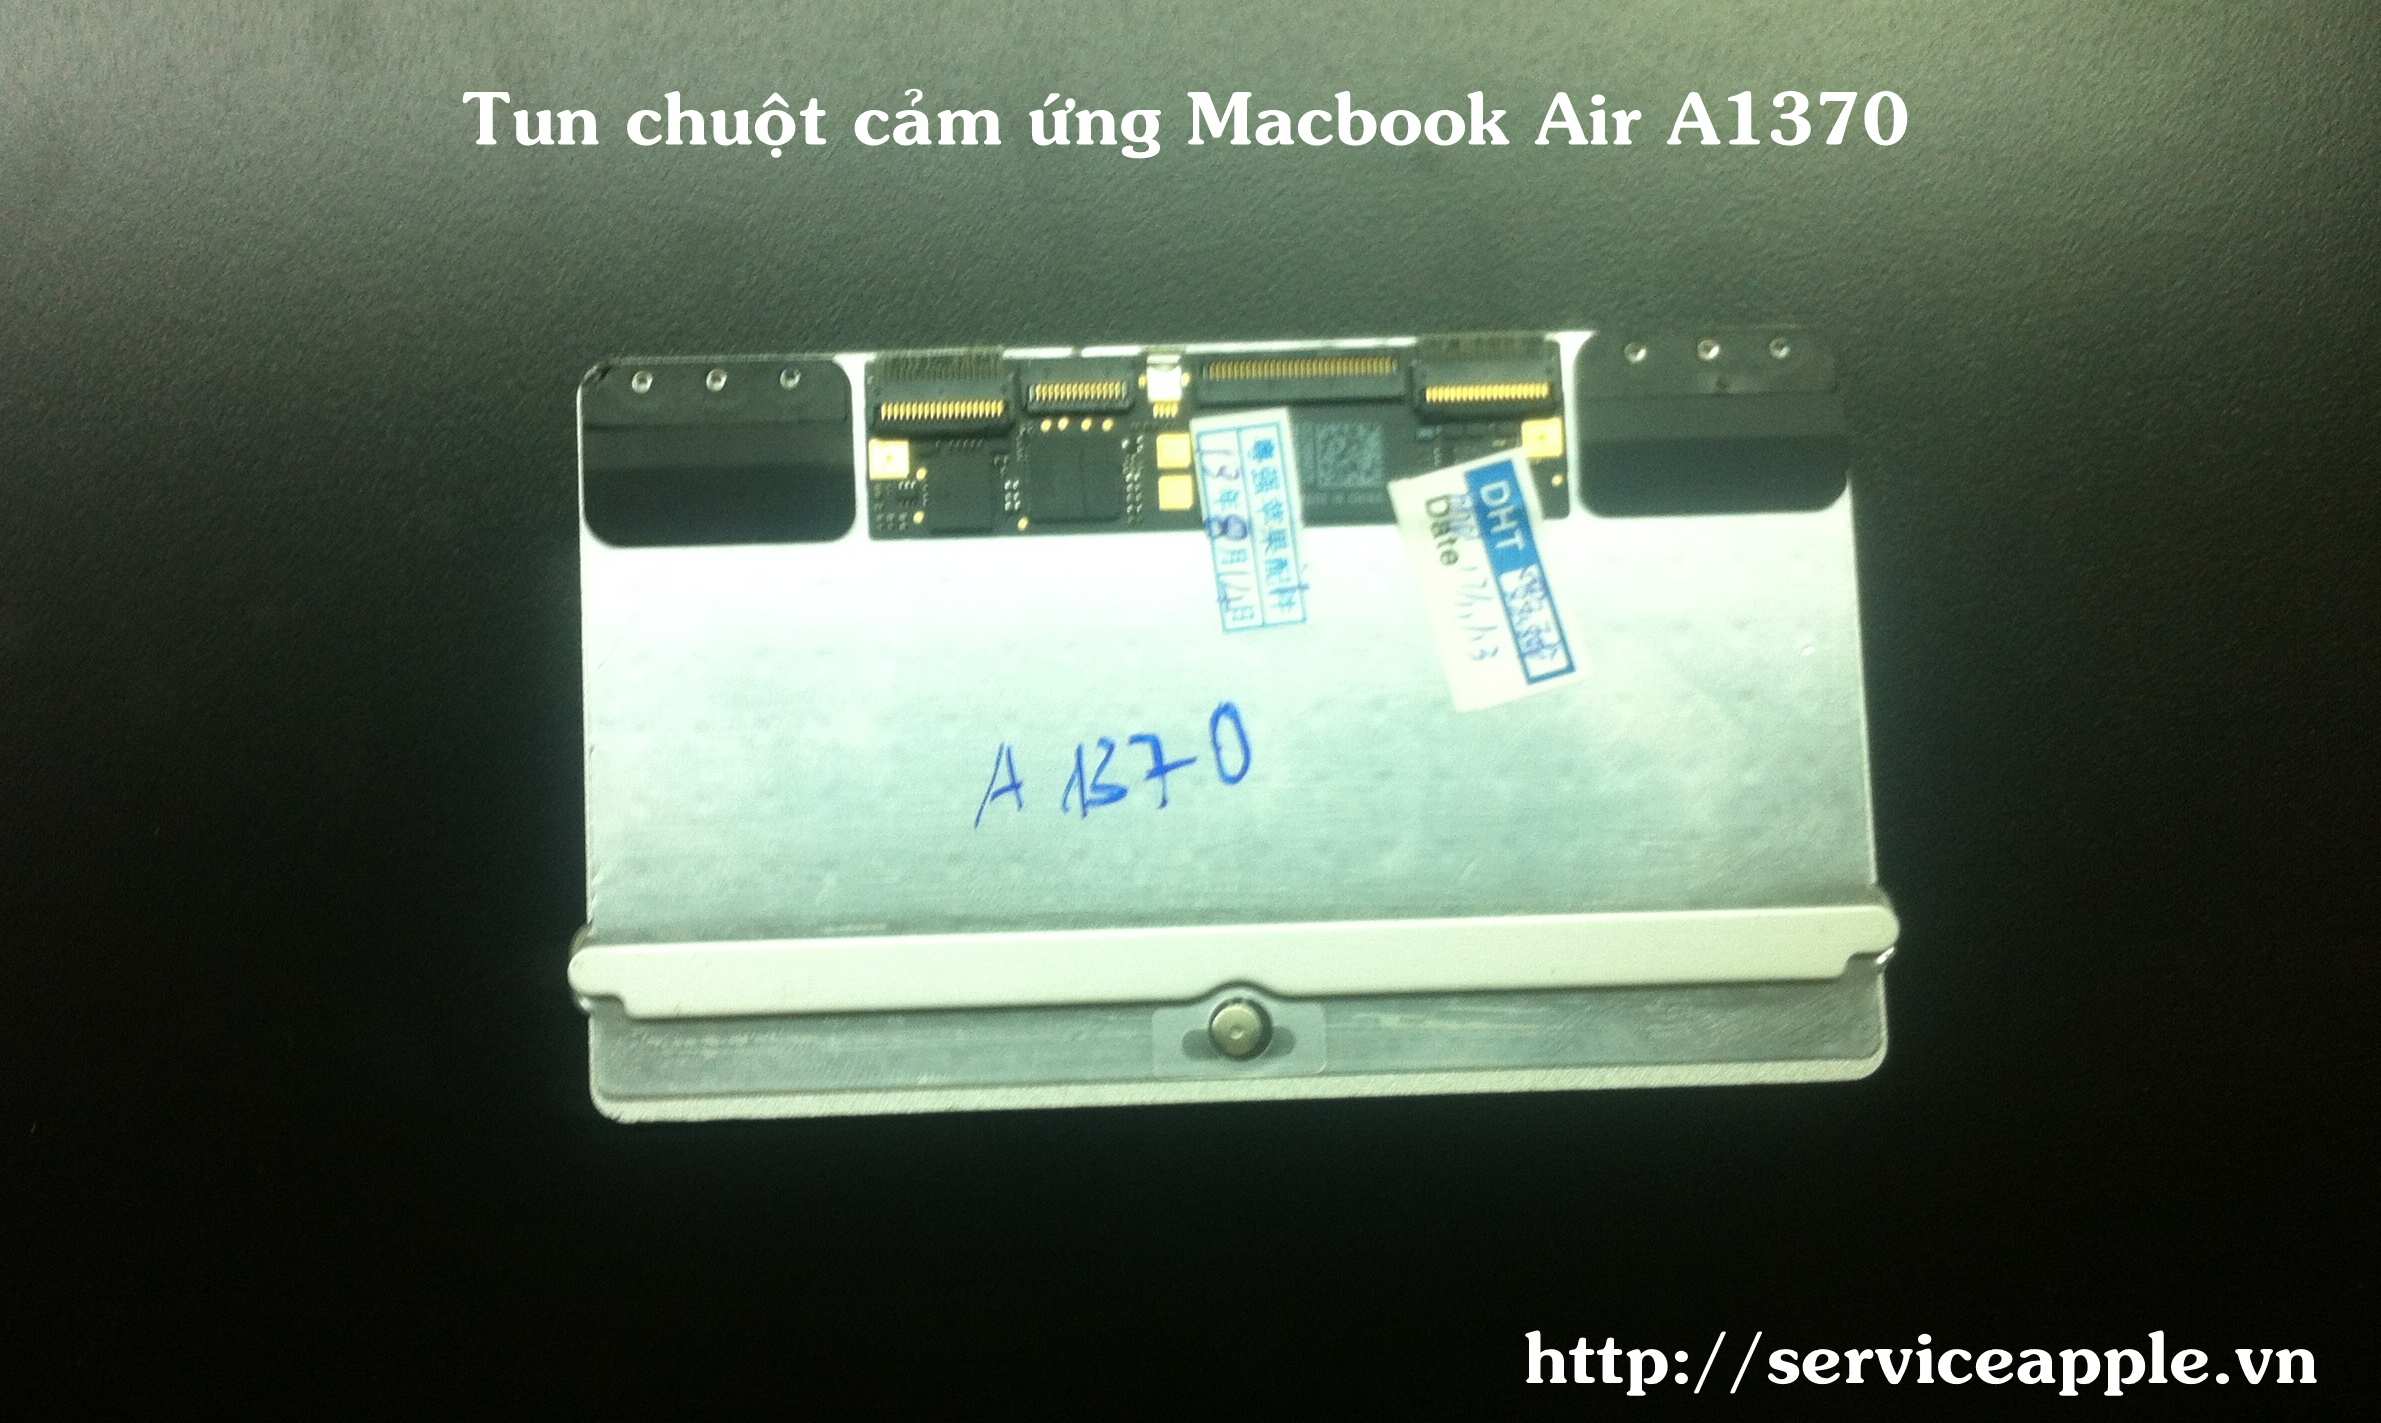 Tun chuot macbook Air A1370.JPG